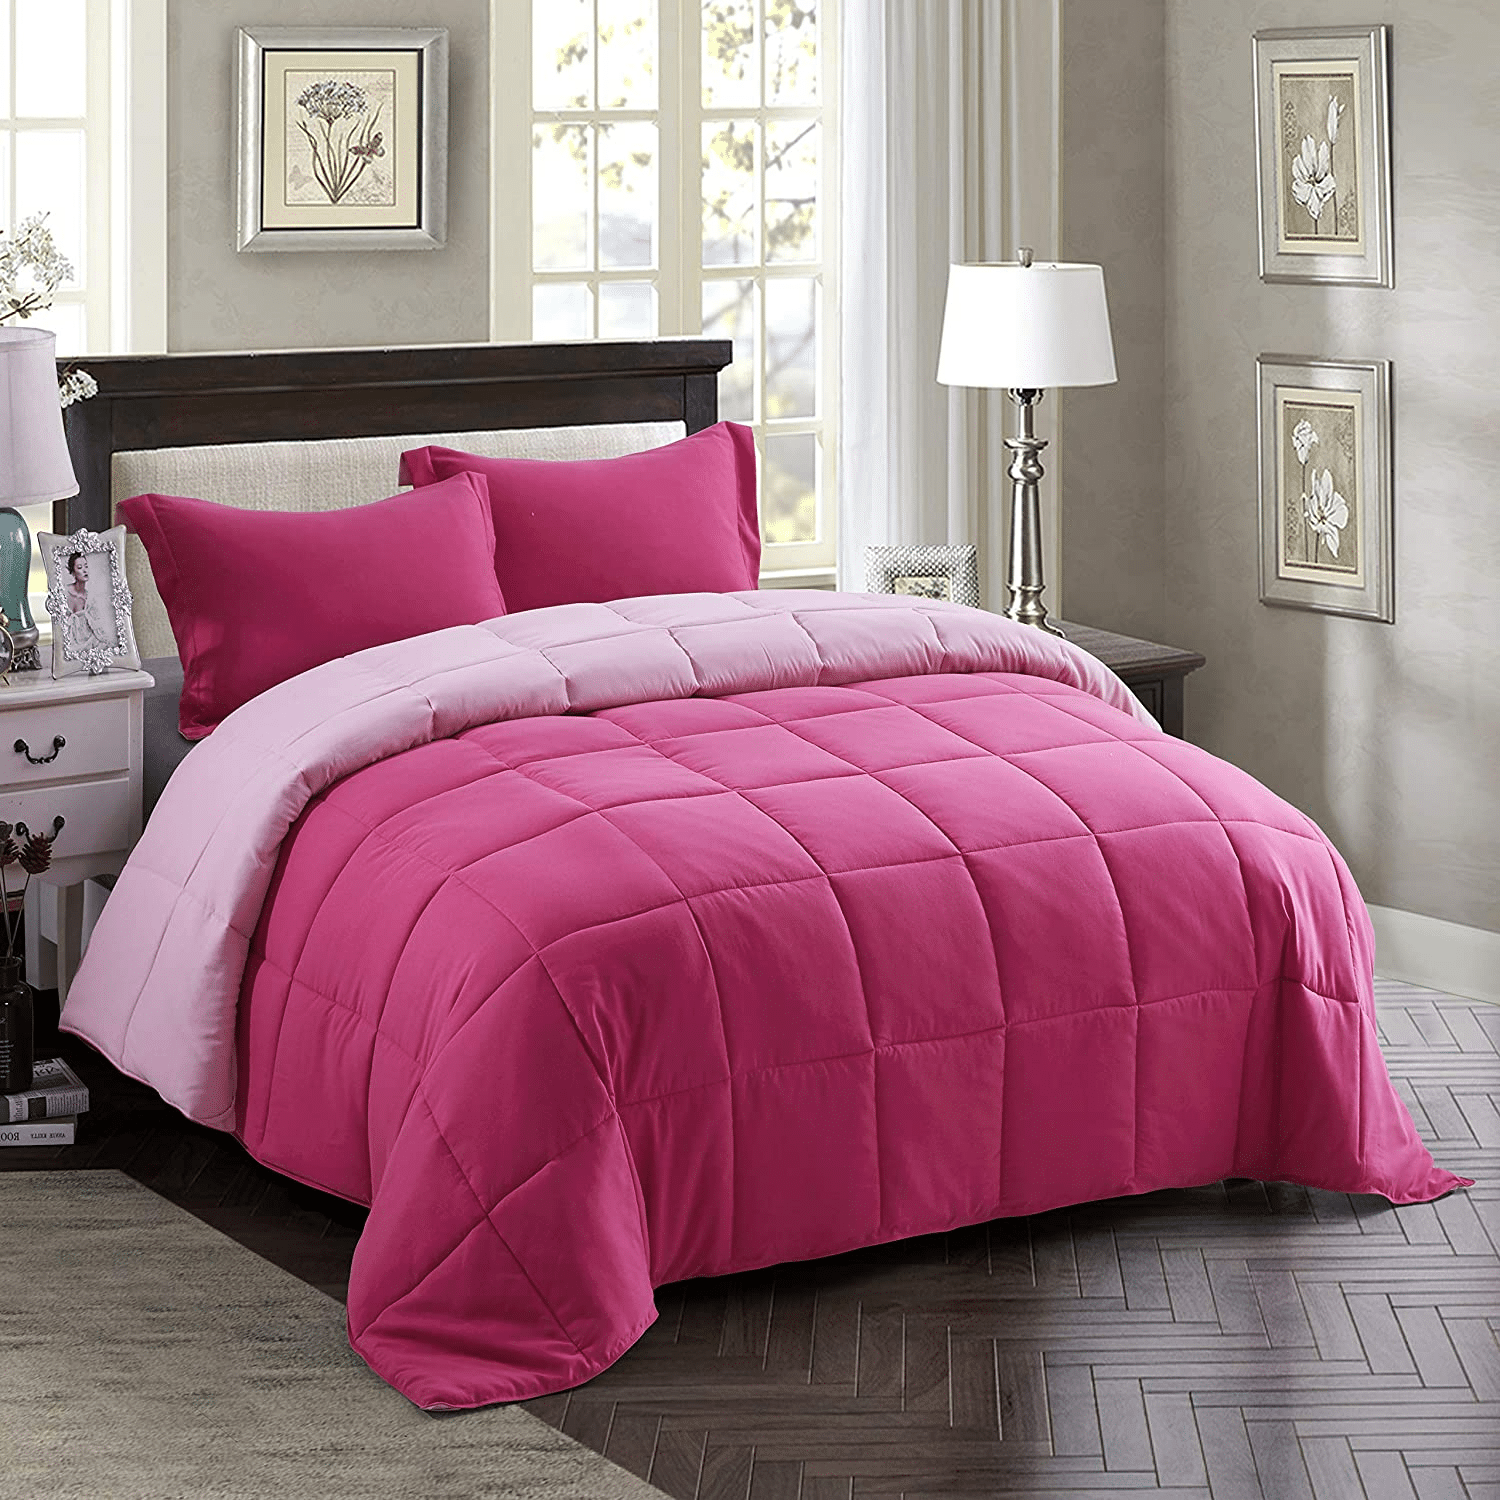 HIG 3pc Pink Comforter Set 